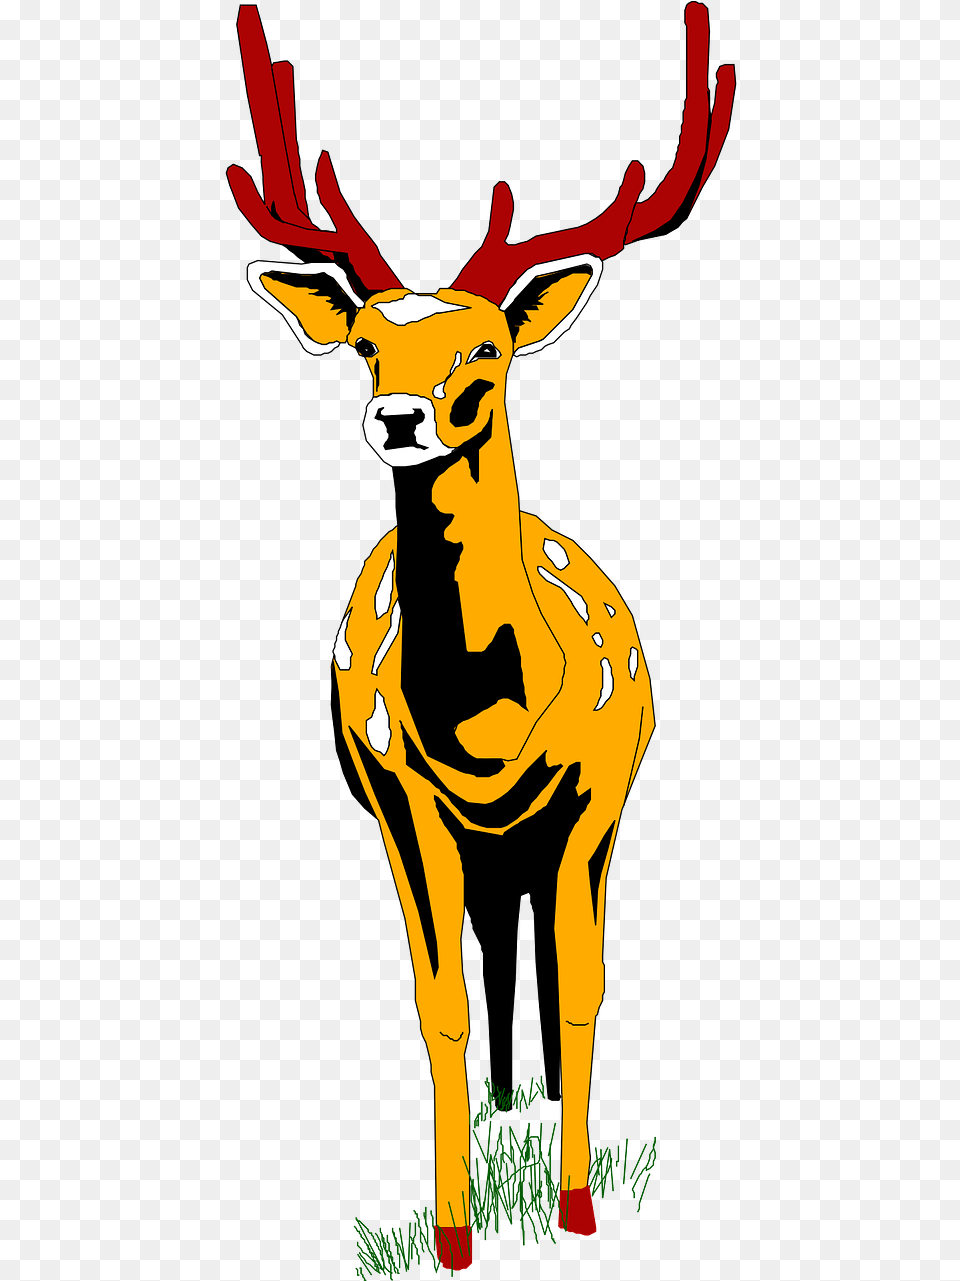 Cartoon Deer Front View, Animal, Mammal, Wildlife, Elk Png Image